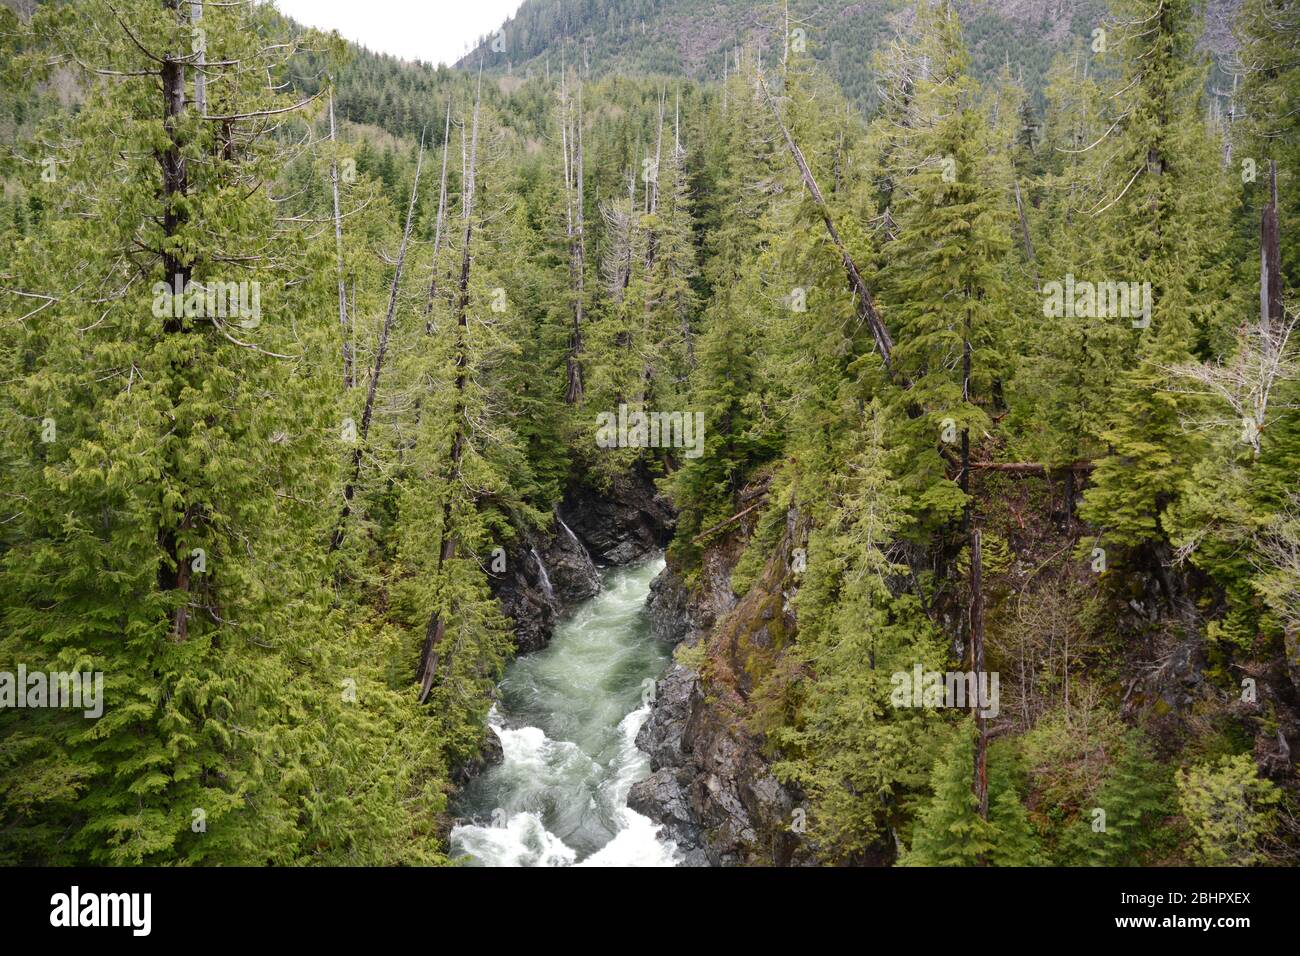 La gola e le rapide del fiume Gordon nella foresta pluviale temperata sulla costa occidentale dell'isola di Vancouver, Port Renfrew, British Columbia, Canada. Foto Stock